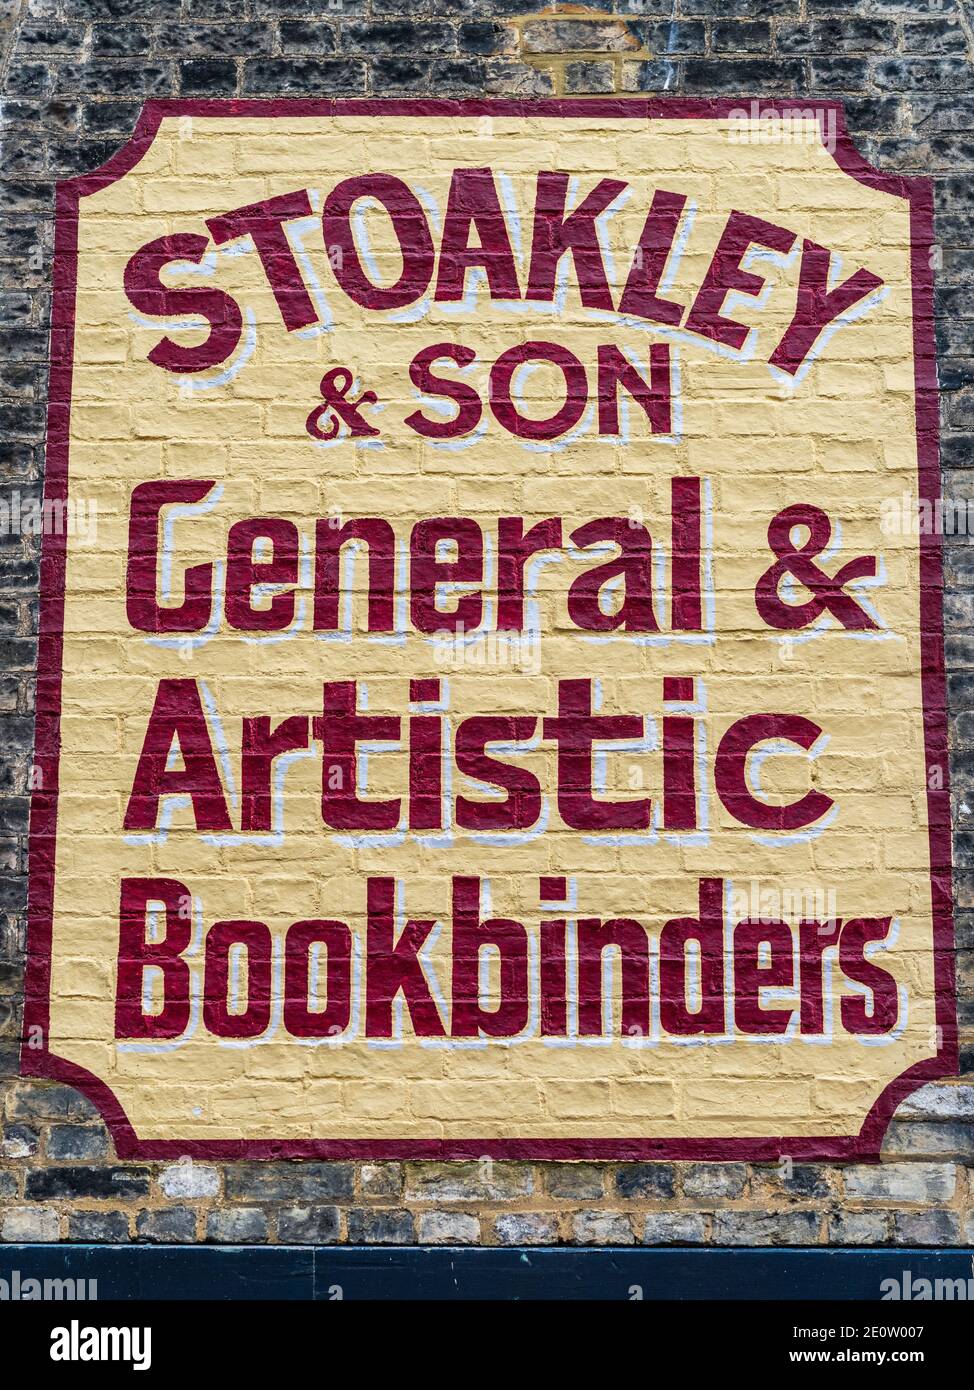 Bemalte Wandwerbung Cambridge - umstrittene Restaurierung eines Geisterzeichens in Green Street Cambridge für Stoakley & Son General & Artistic Bookbinders. Stockfoto